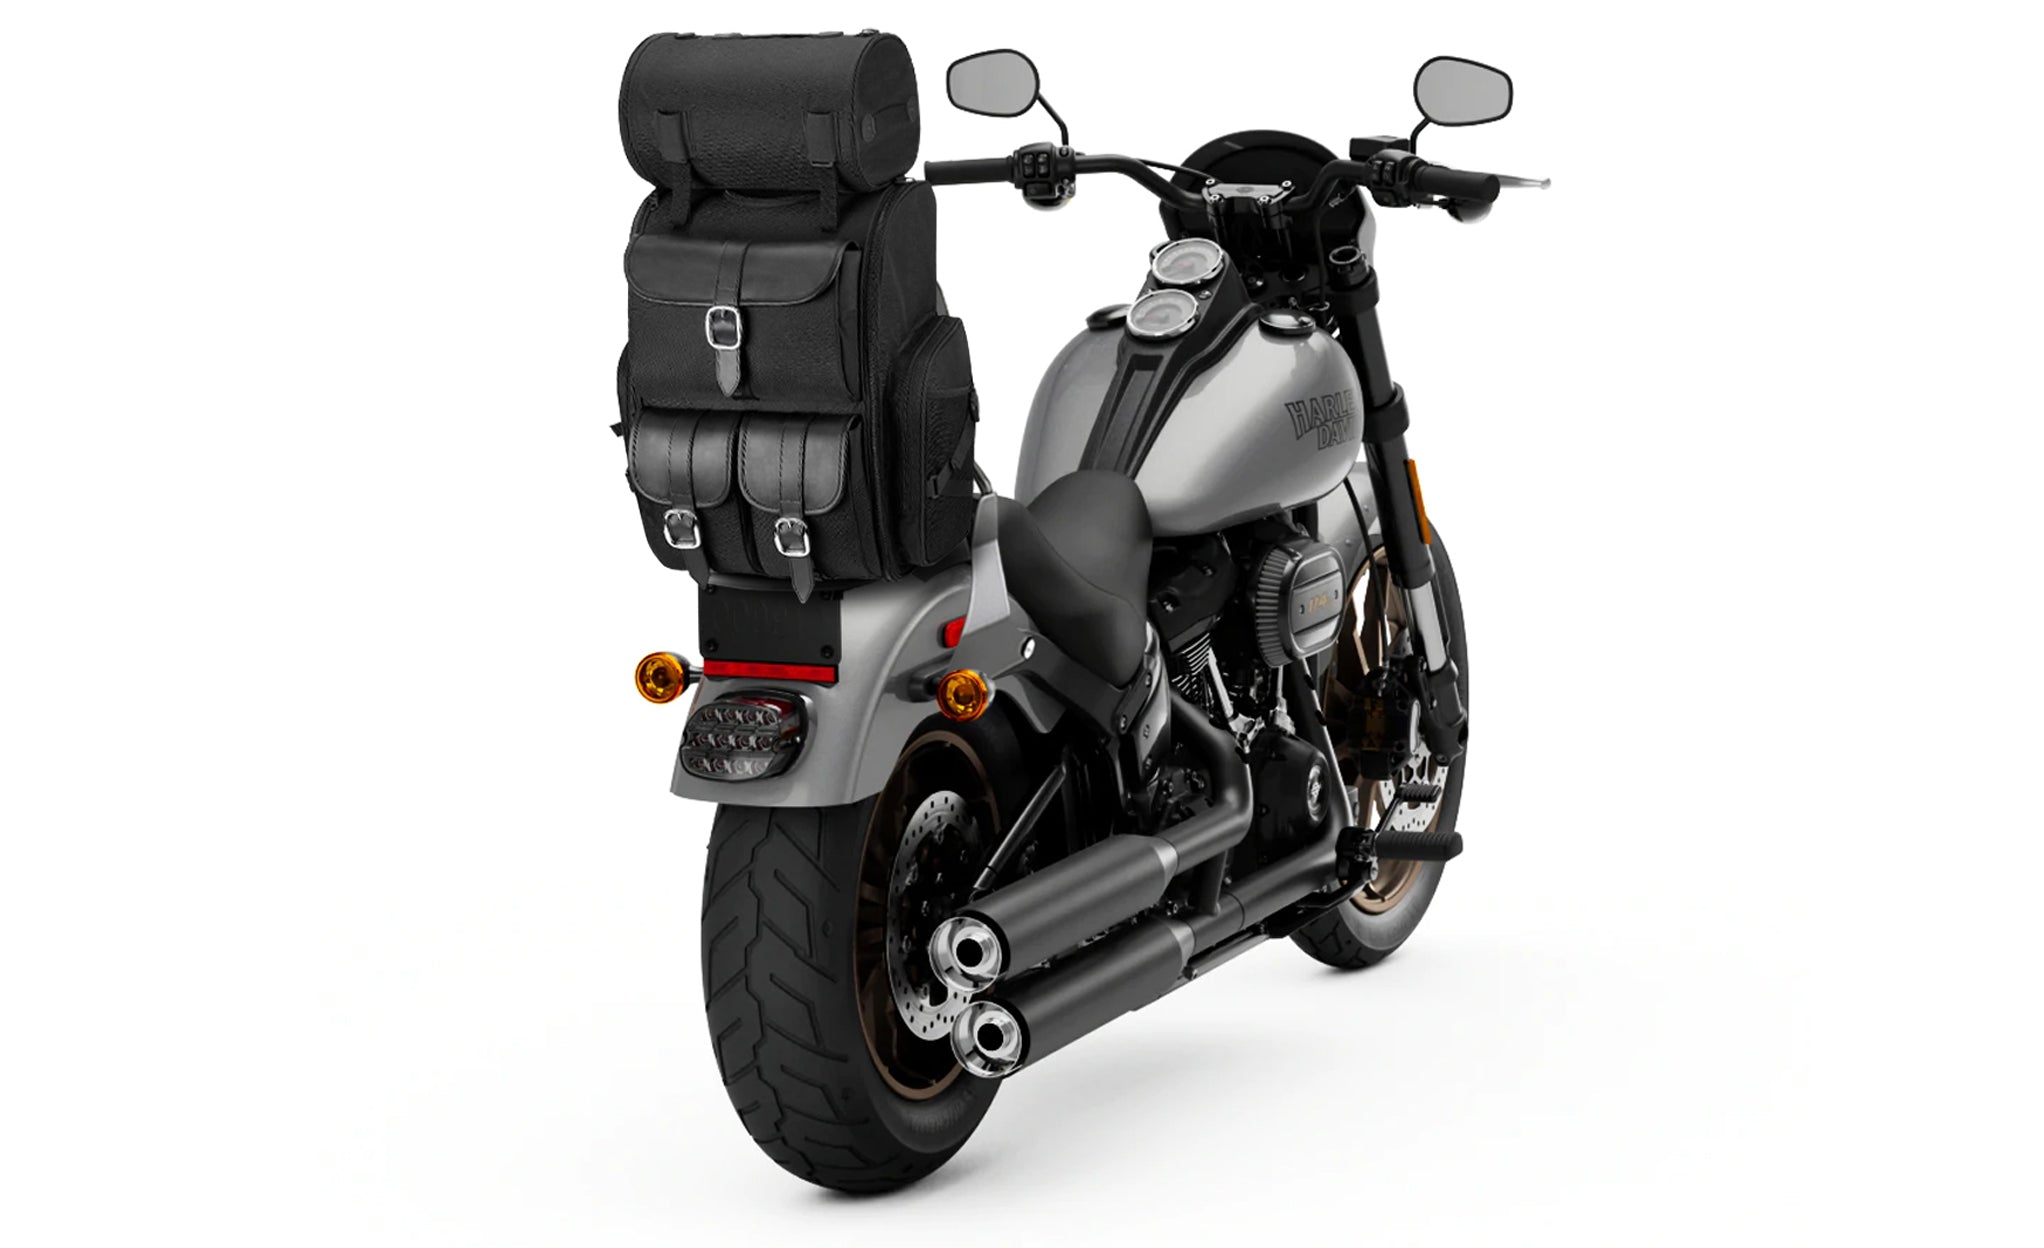 Viking Highway Extra Large Plain Kawasaki Motorcycle Tail Bag Bag on Bike View @expand